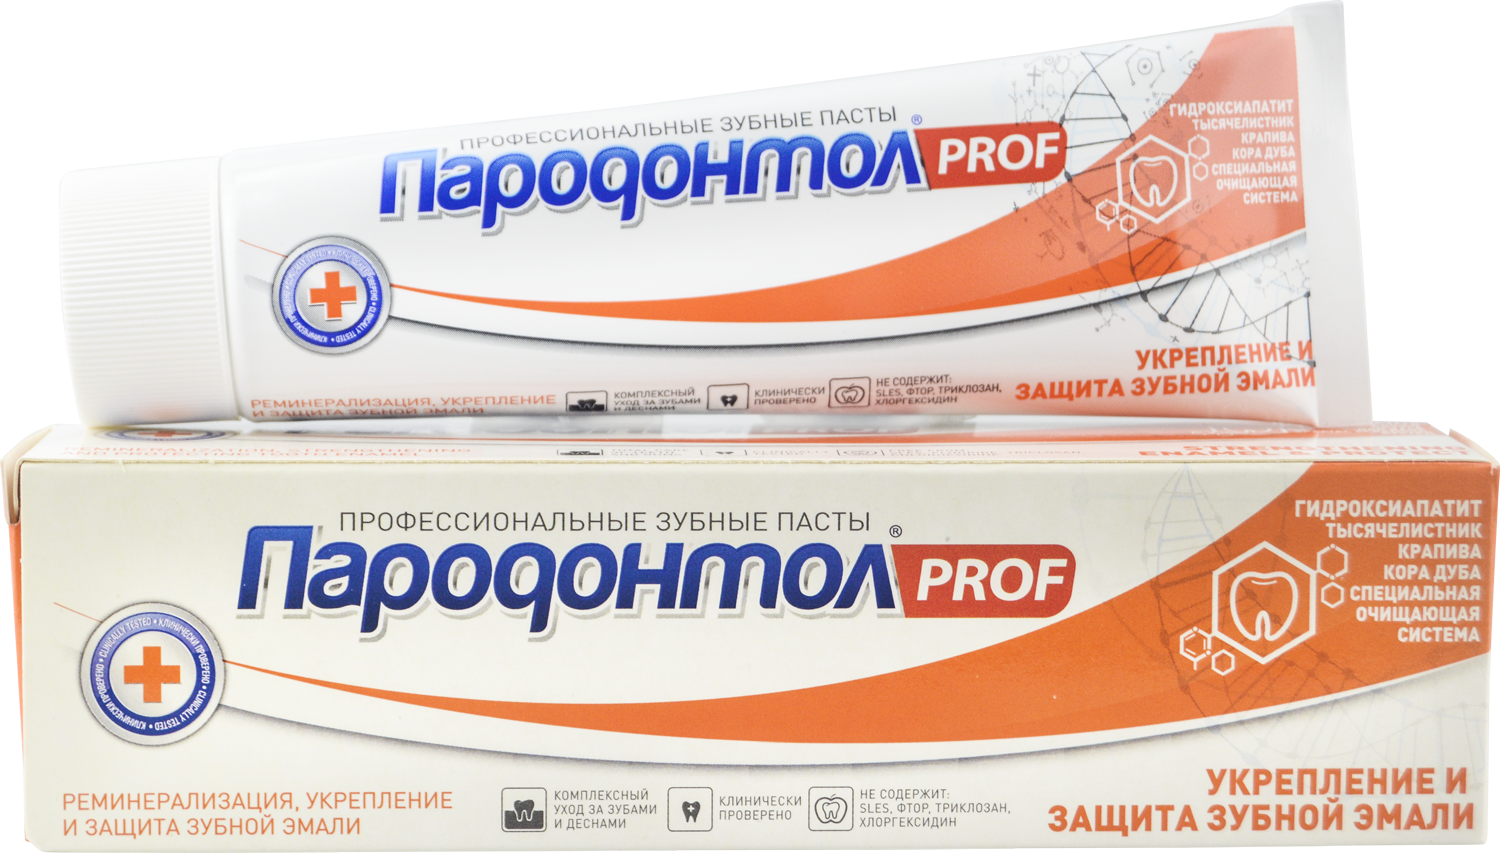 Зубная паста "Пародонтол" ("Parodontol") PROF Укрепление и защита зубной эмали